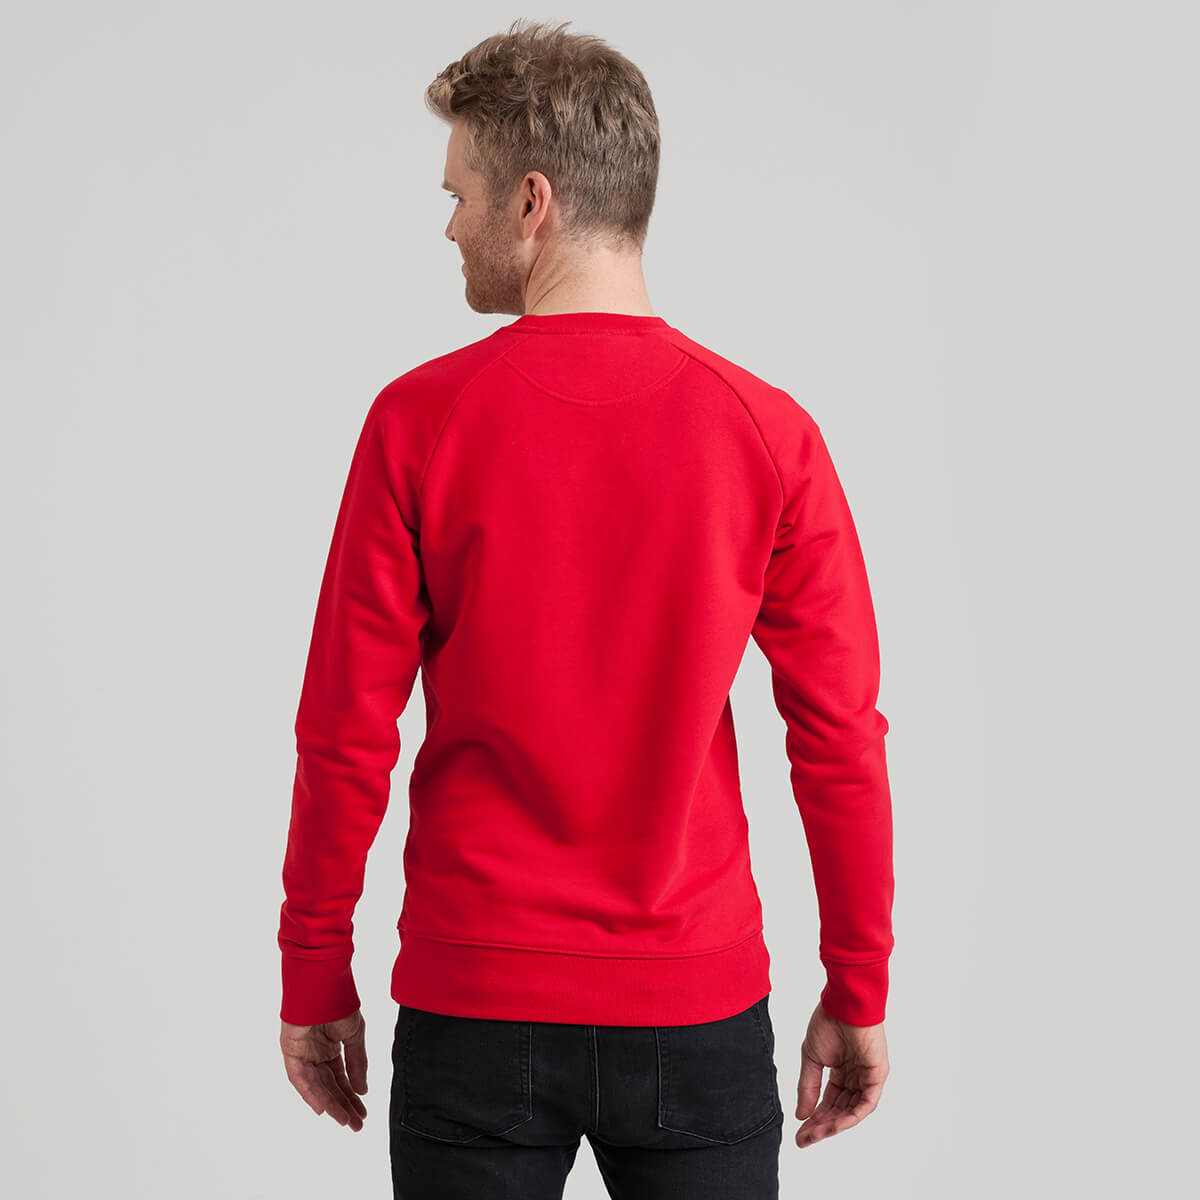 GCN Core Red Sweatshirt